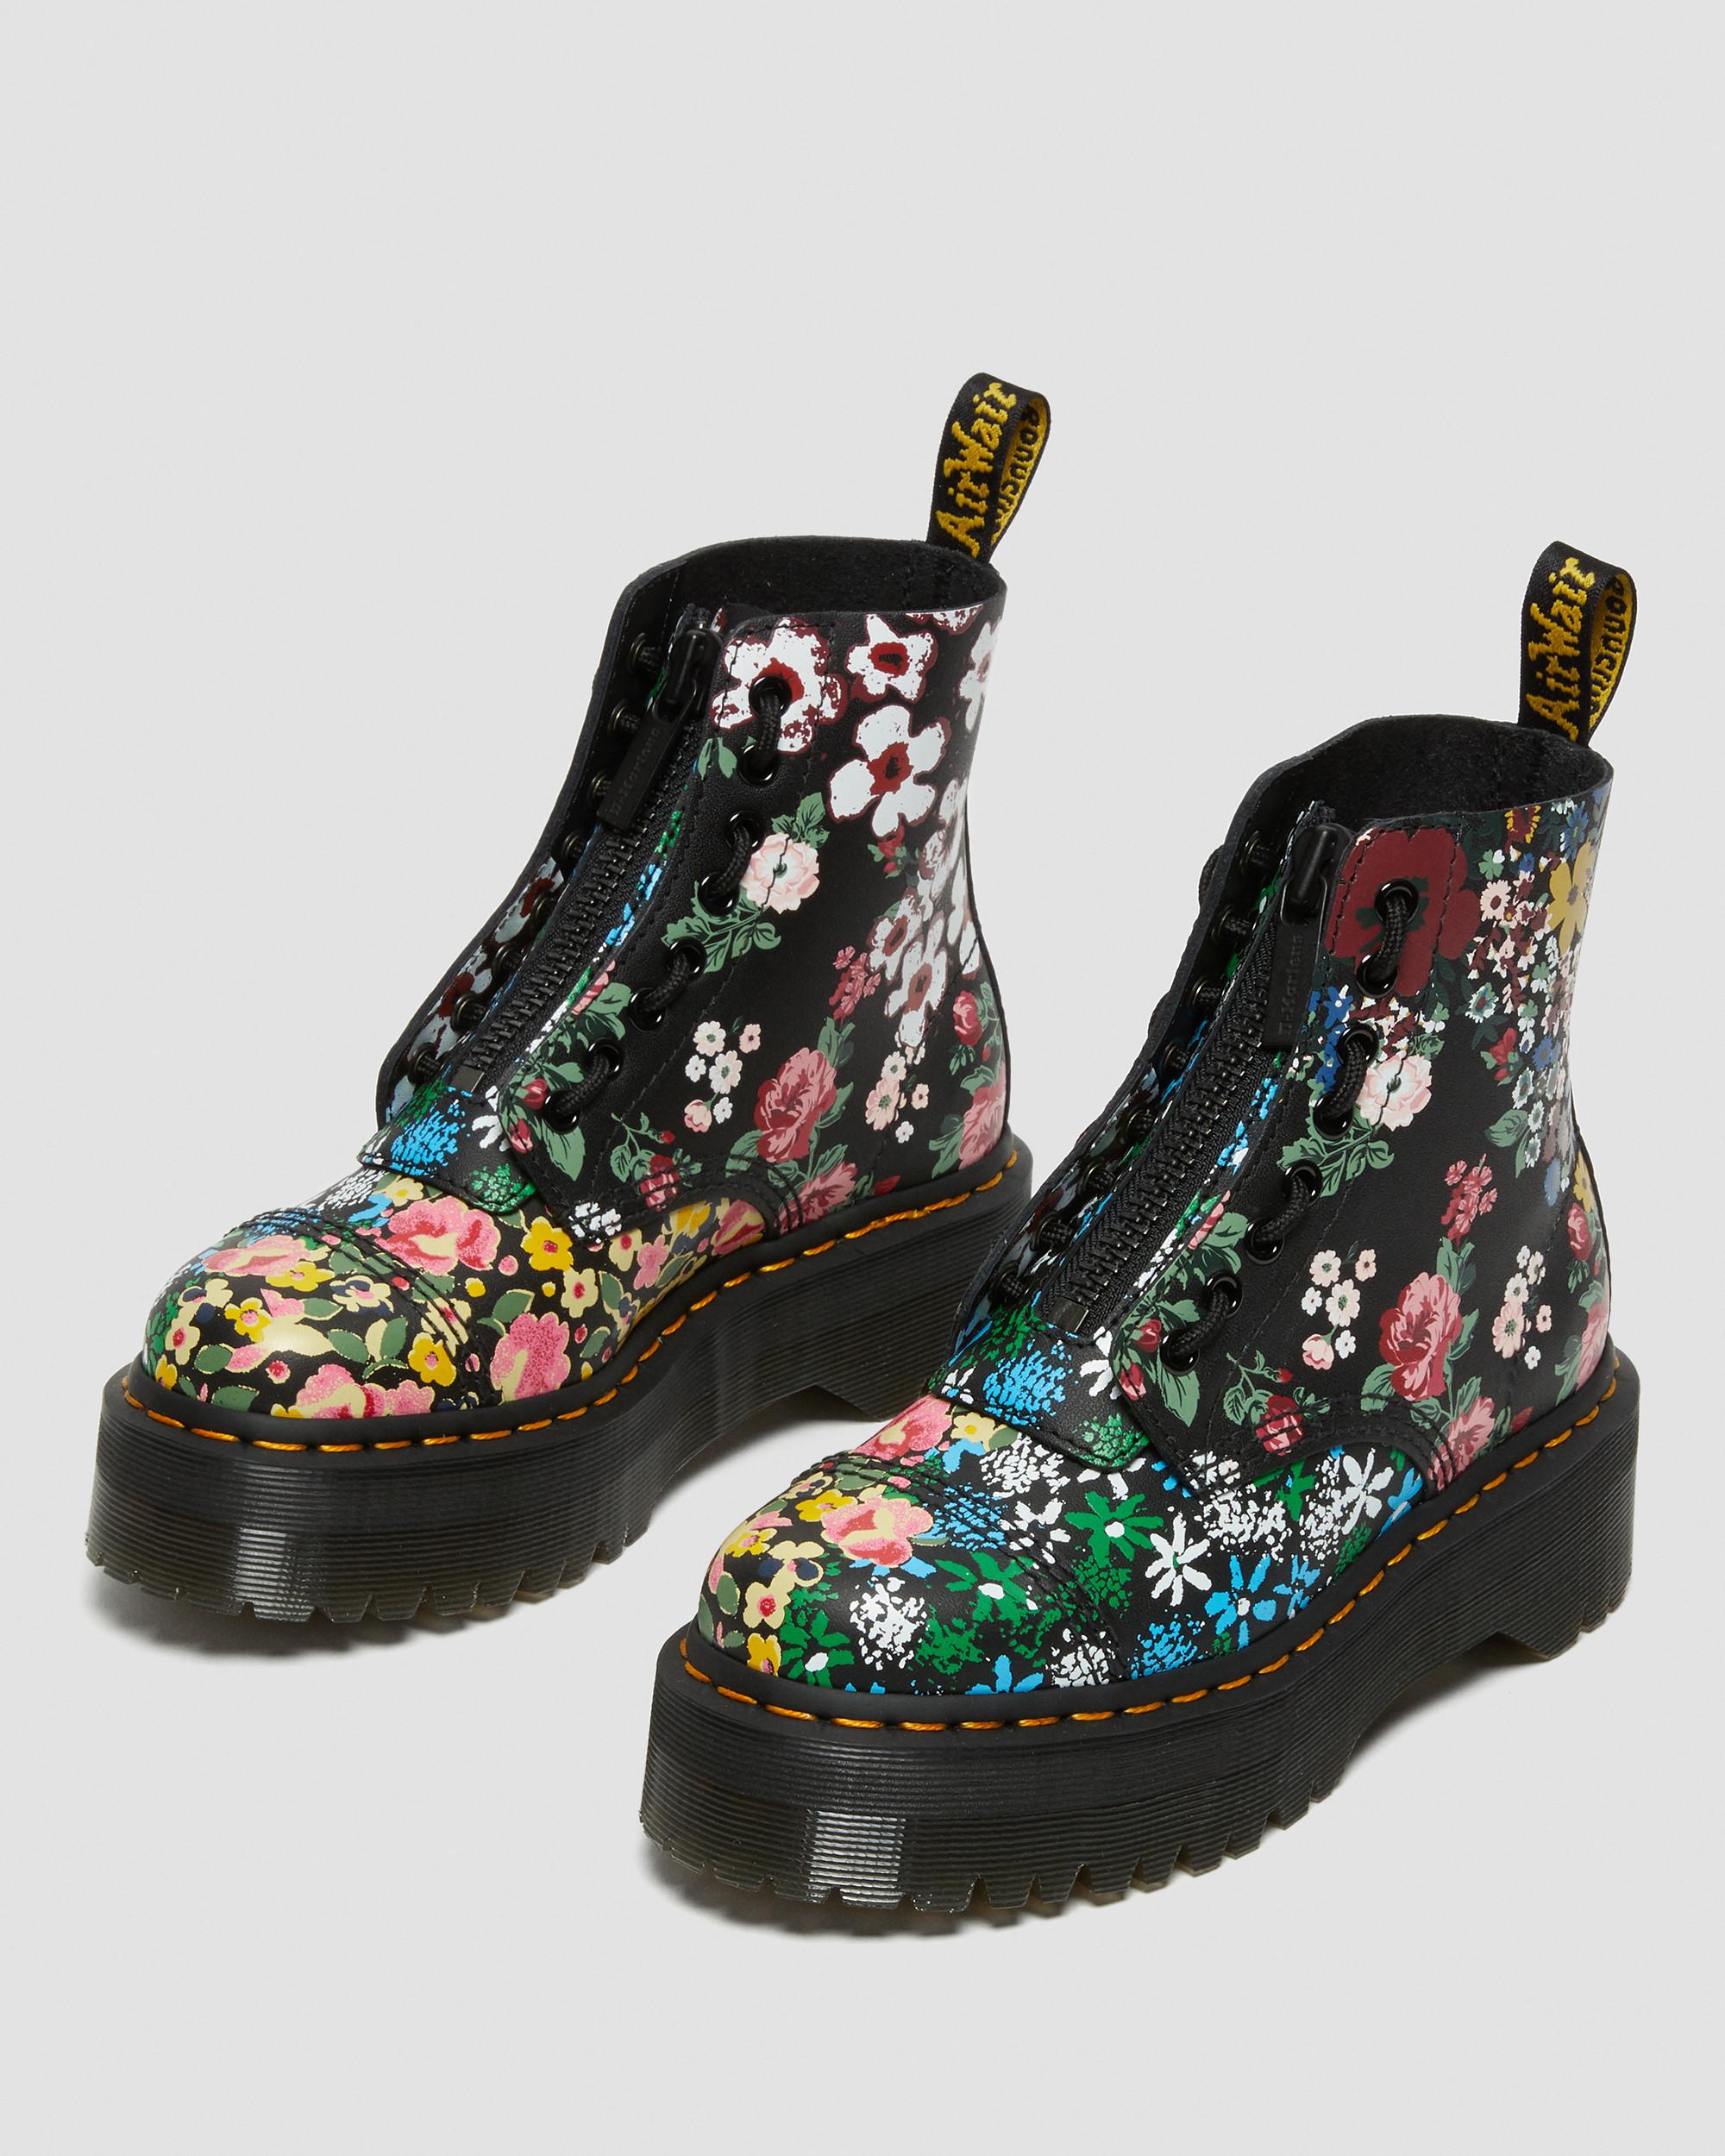 Sinclair Martens Boots | Black Dr. Leather Platform in Mash Up Floral